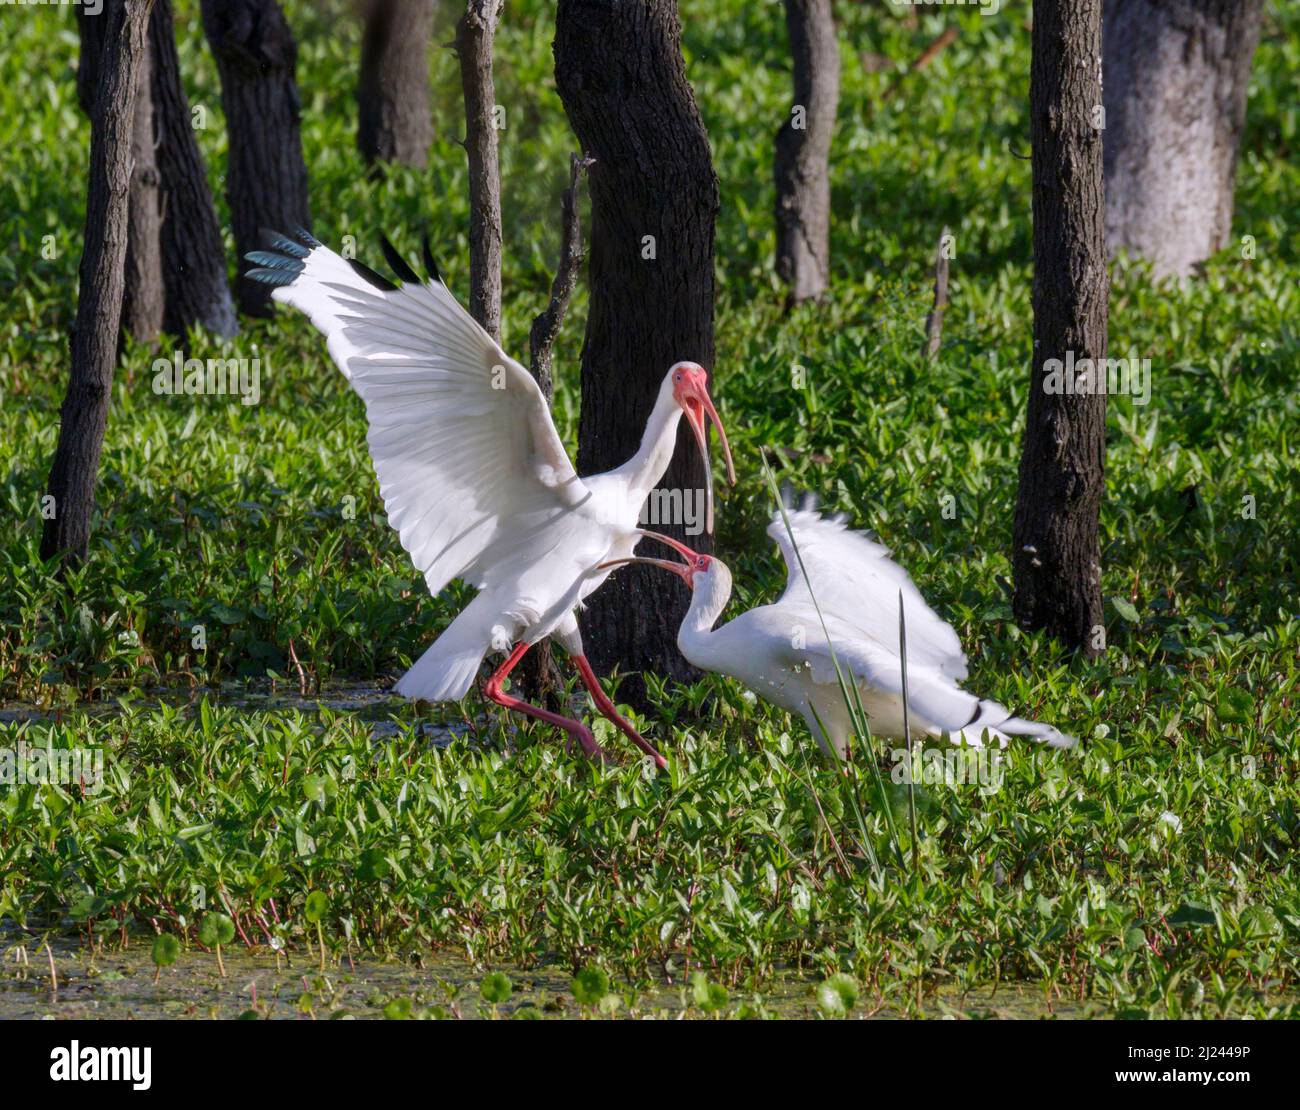 Hombres ibis blancos americanos (Eudocimus albus) que luchan en el pantano del bosque, Brazos Bend State Park, Needville, texas, EE.UU. Foto de stock